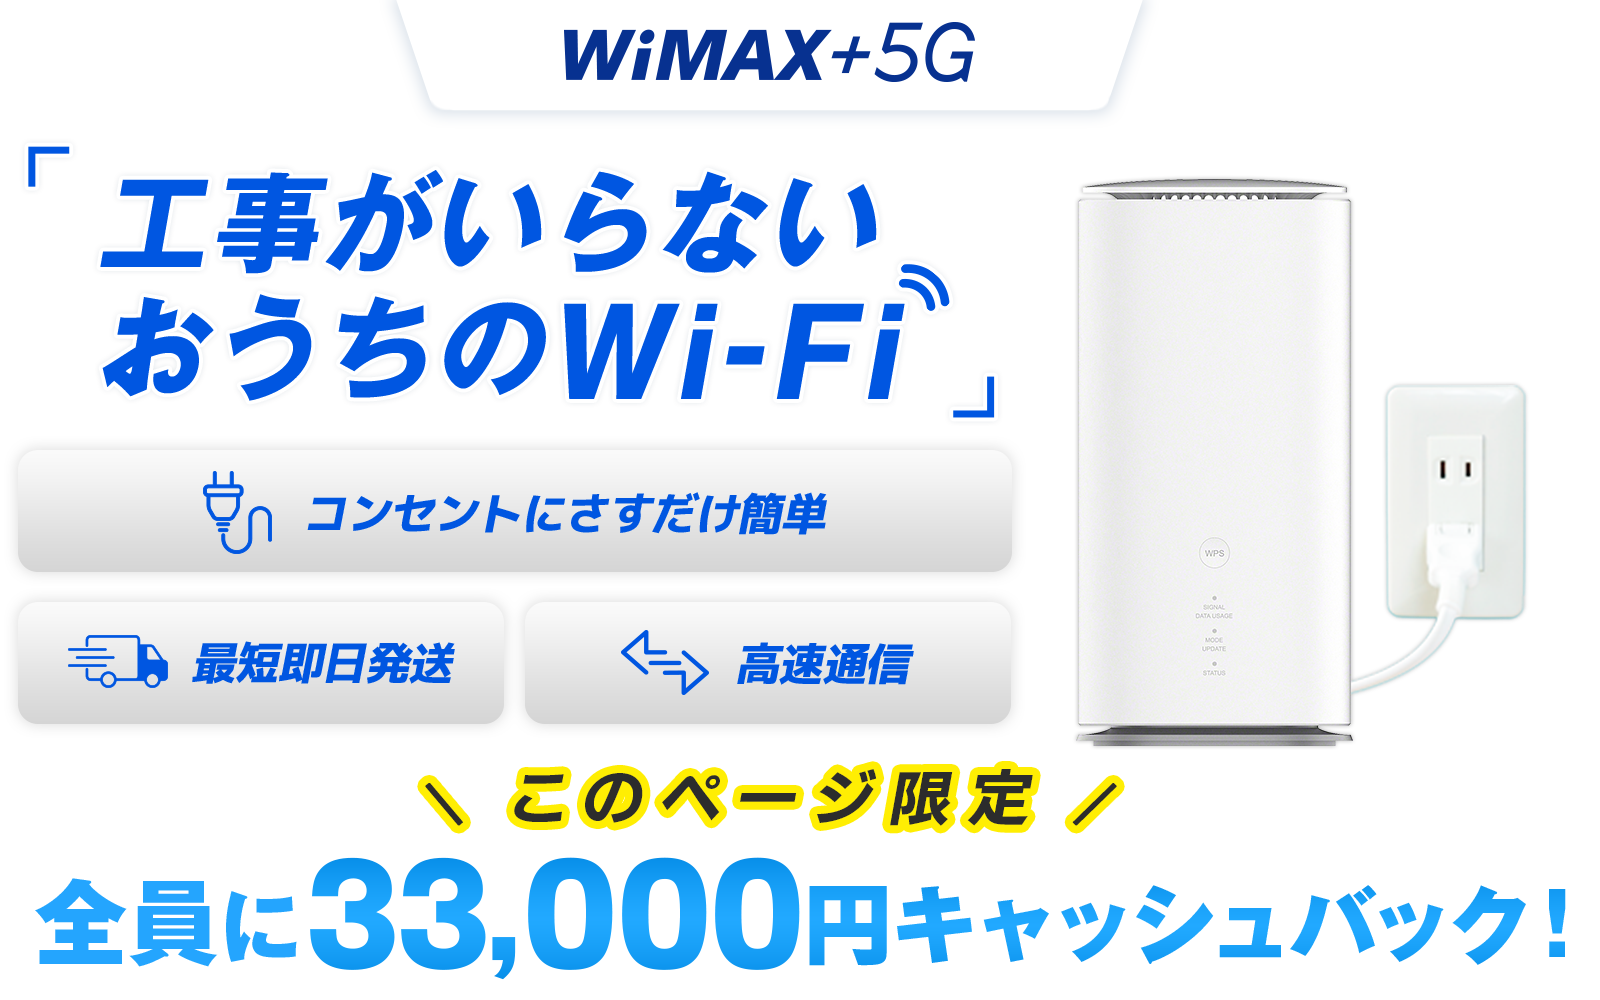 WiMAX +5G 工事がいらないおうちのWi-Fi コンセントにさすだけ簡単 最短即日発送 高速通信